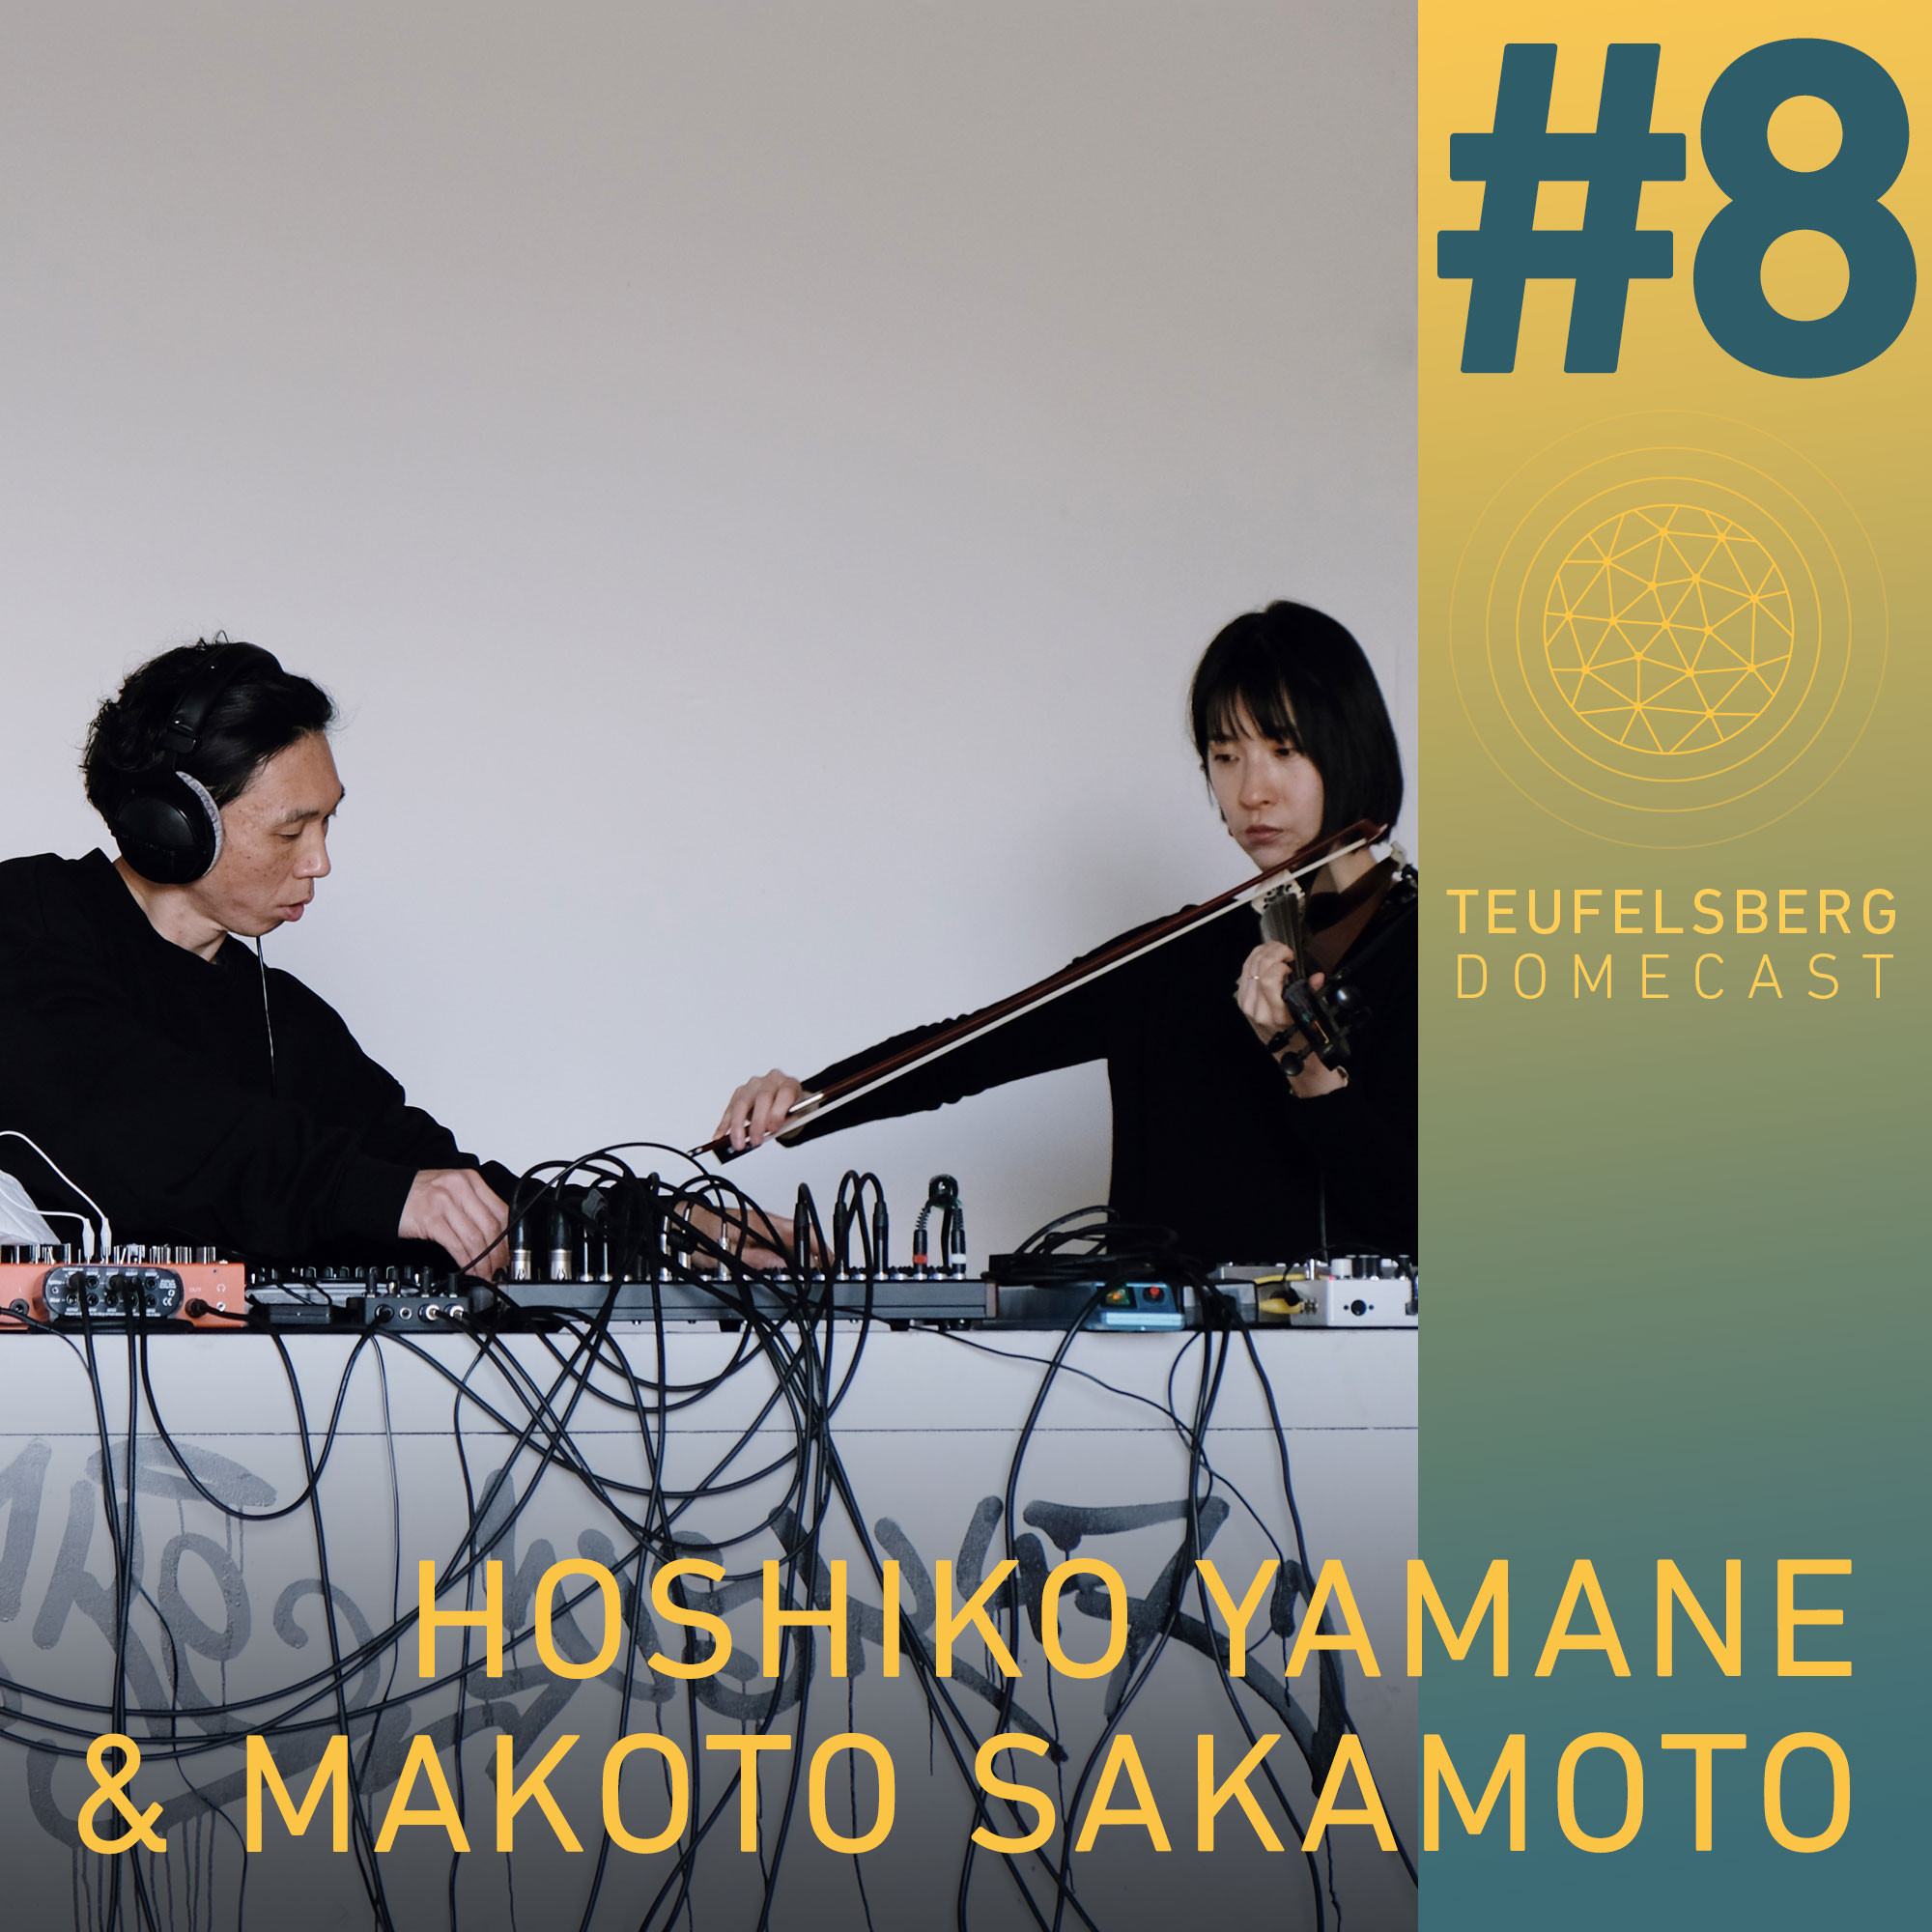 Hoshiko Yamane + Makoto Sakamoto – Domecast #8